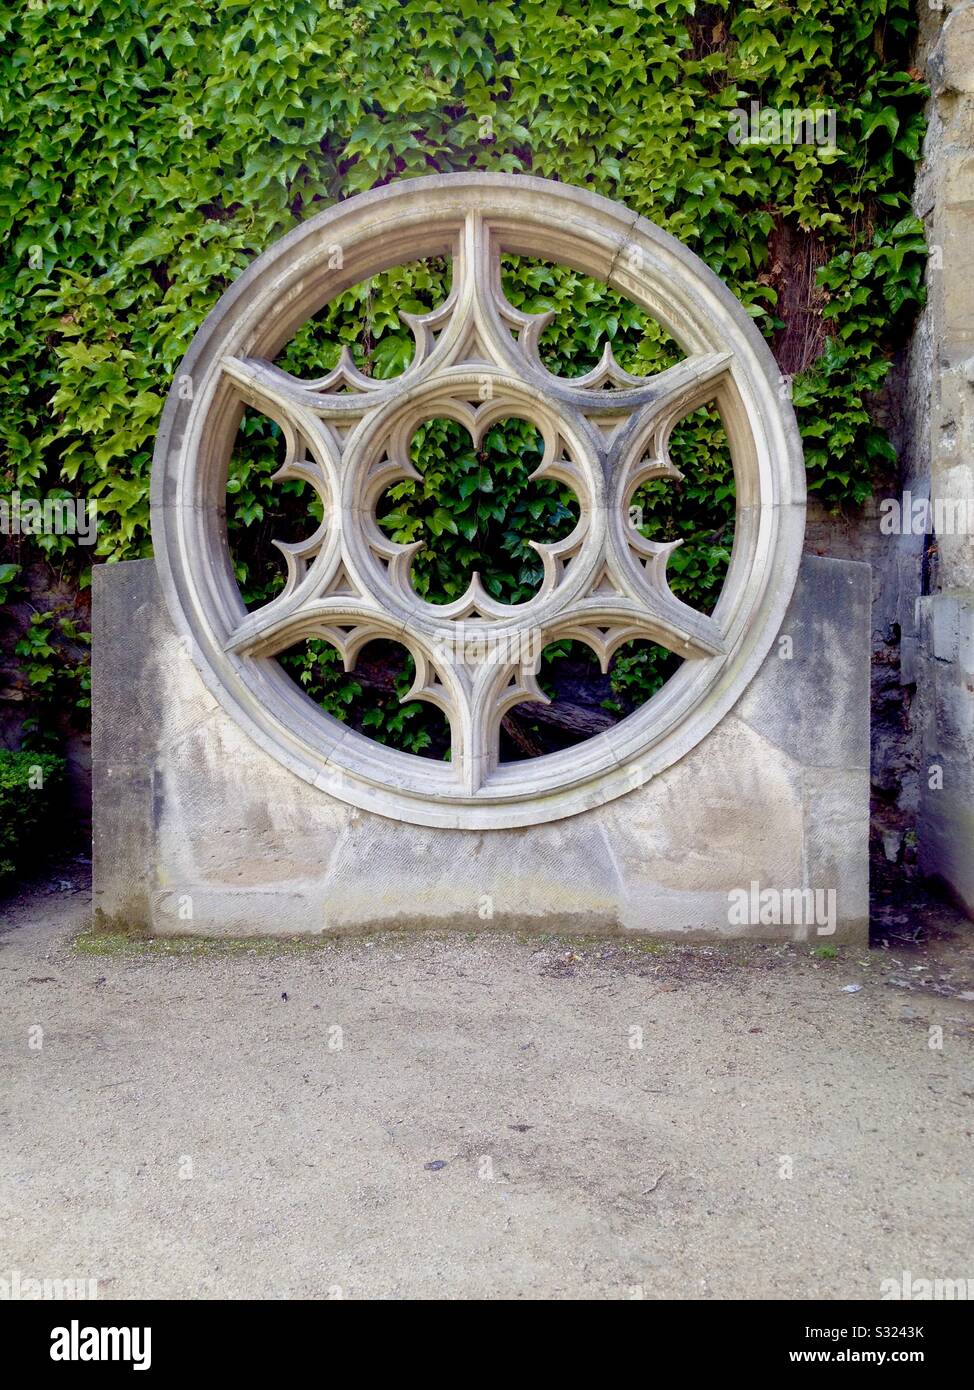 Die runde dekorative Architektur in Le Marais, Paris, Frankreich, mit einer Evivwand dahinter. Stockfoto